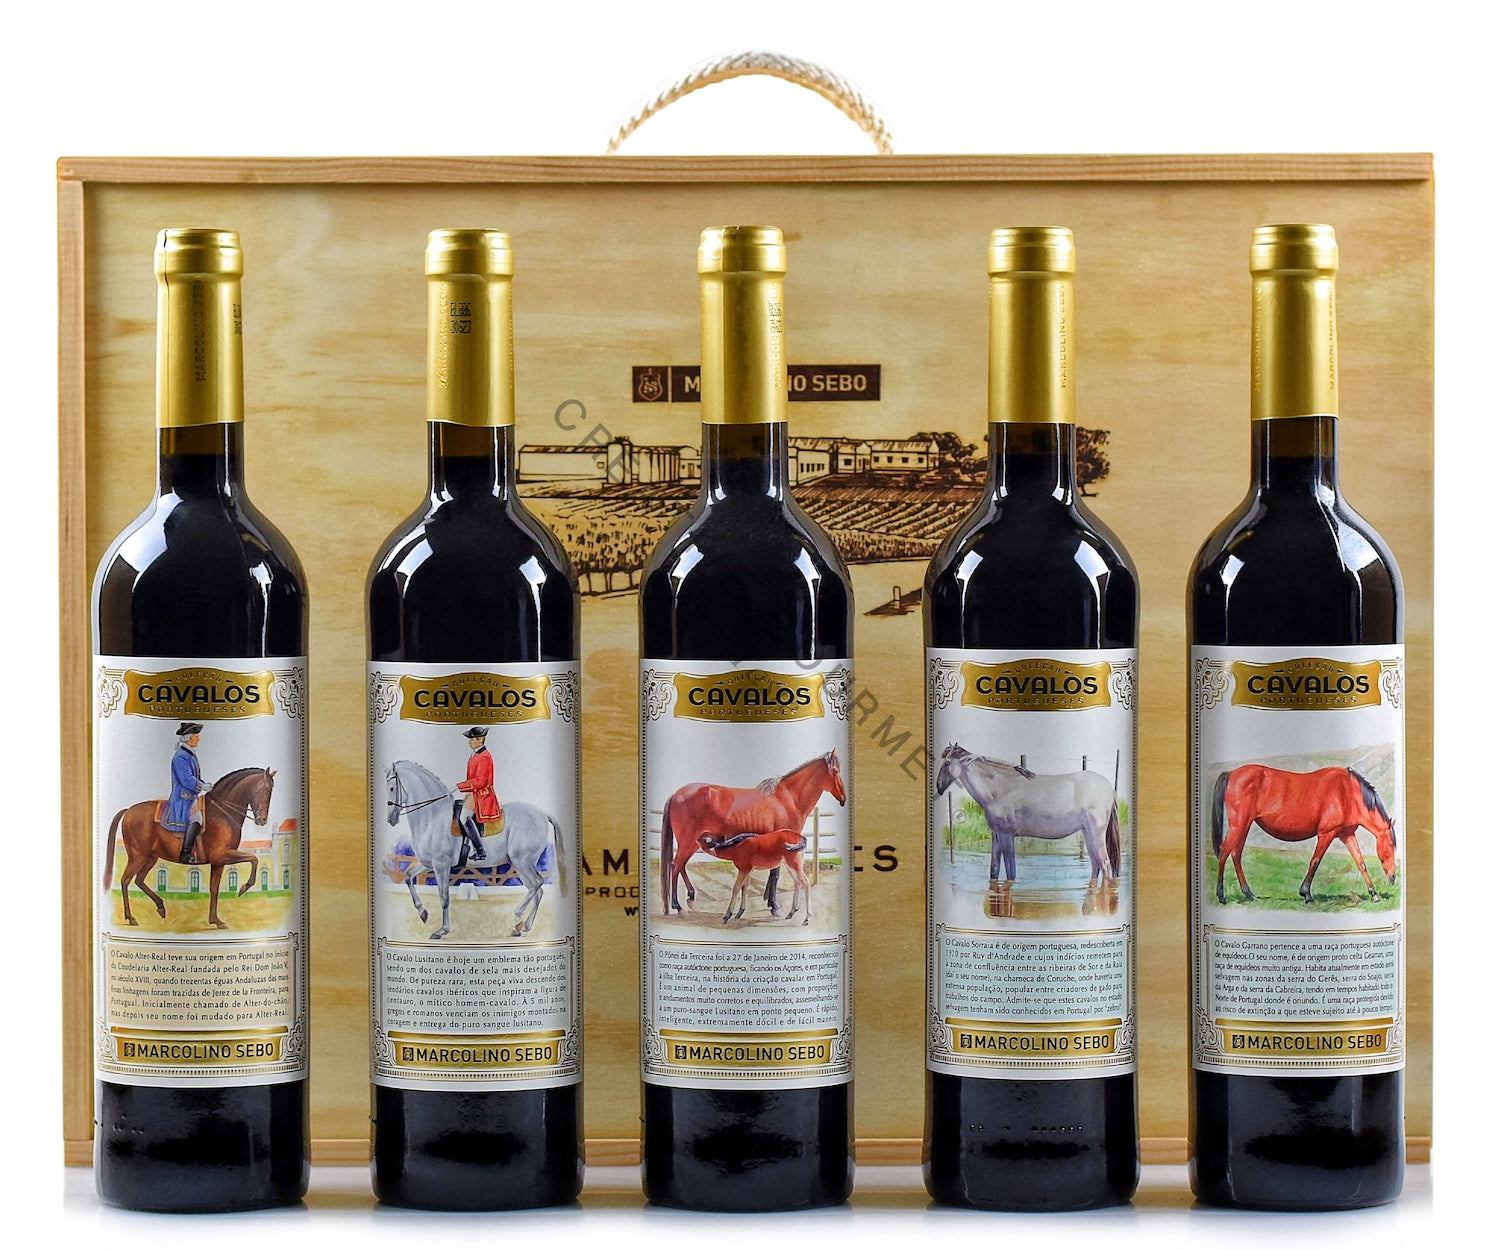 Conjunto de Vinhos "Colecção de Cavalos Portugueses´ Marcolino Sebo